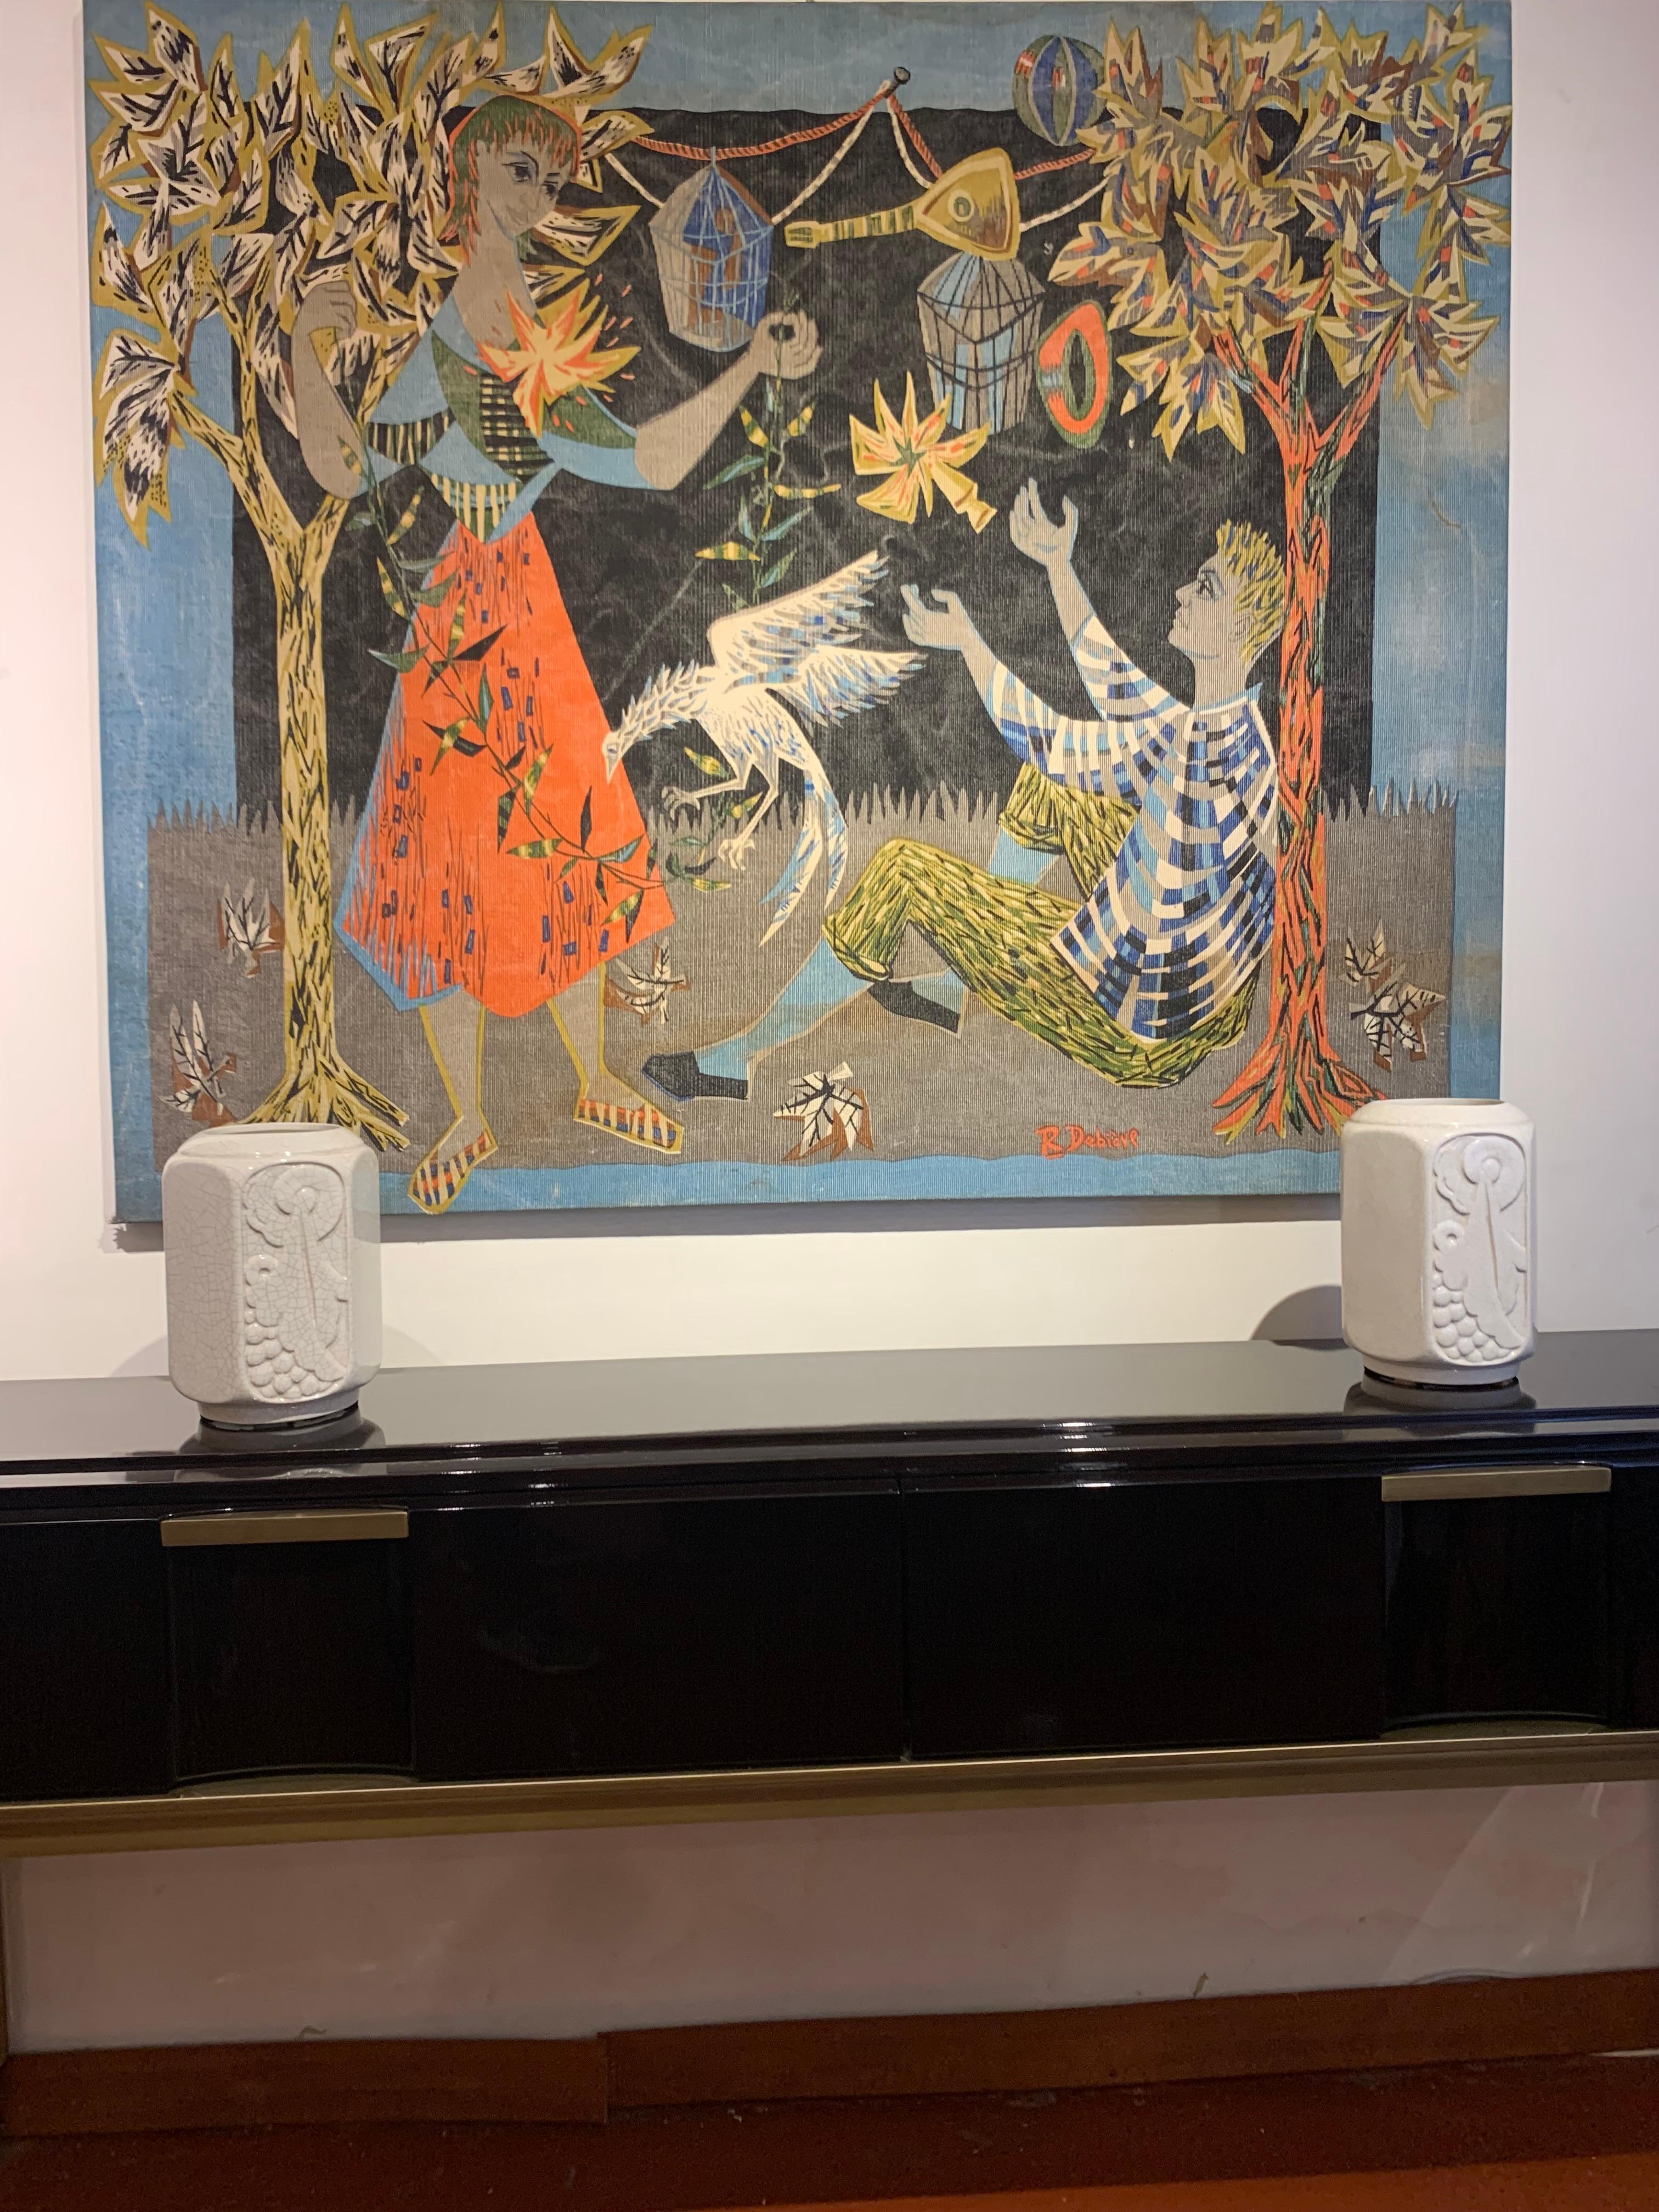 Wandbehang auf Leinwand signiert von Robert Debieve, Frankreich 1950er Jahre mit lebendigen Farben, die eine Szene von einem Mann und einer Frau in einer Natur-Szene mit Tiefe in der Verwendung von Farben und geometrische Komposition des